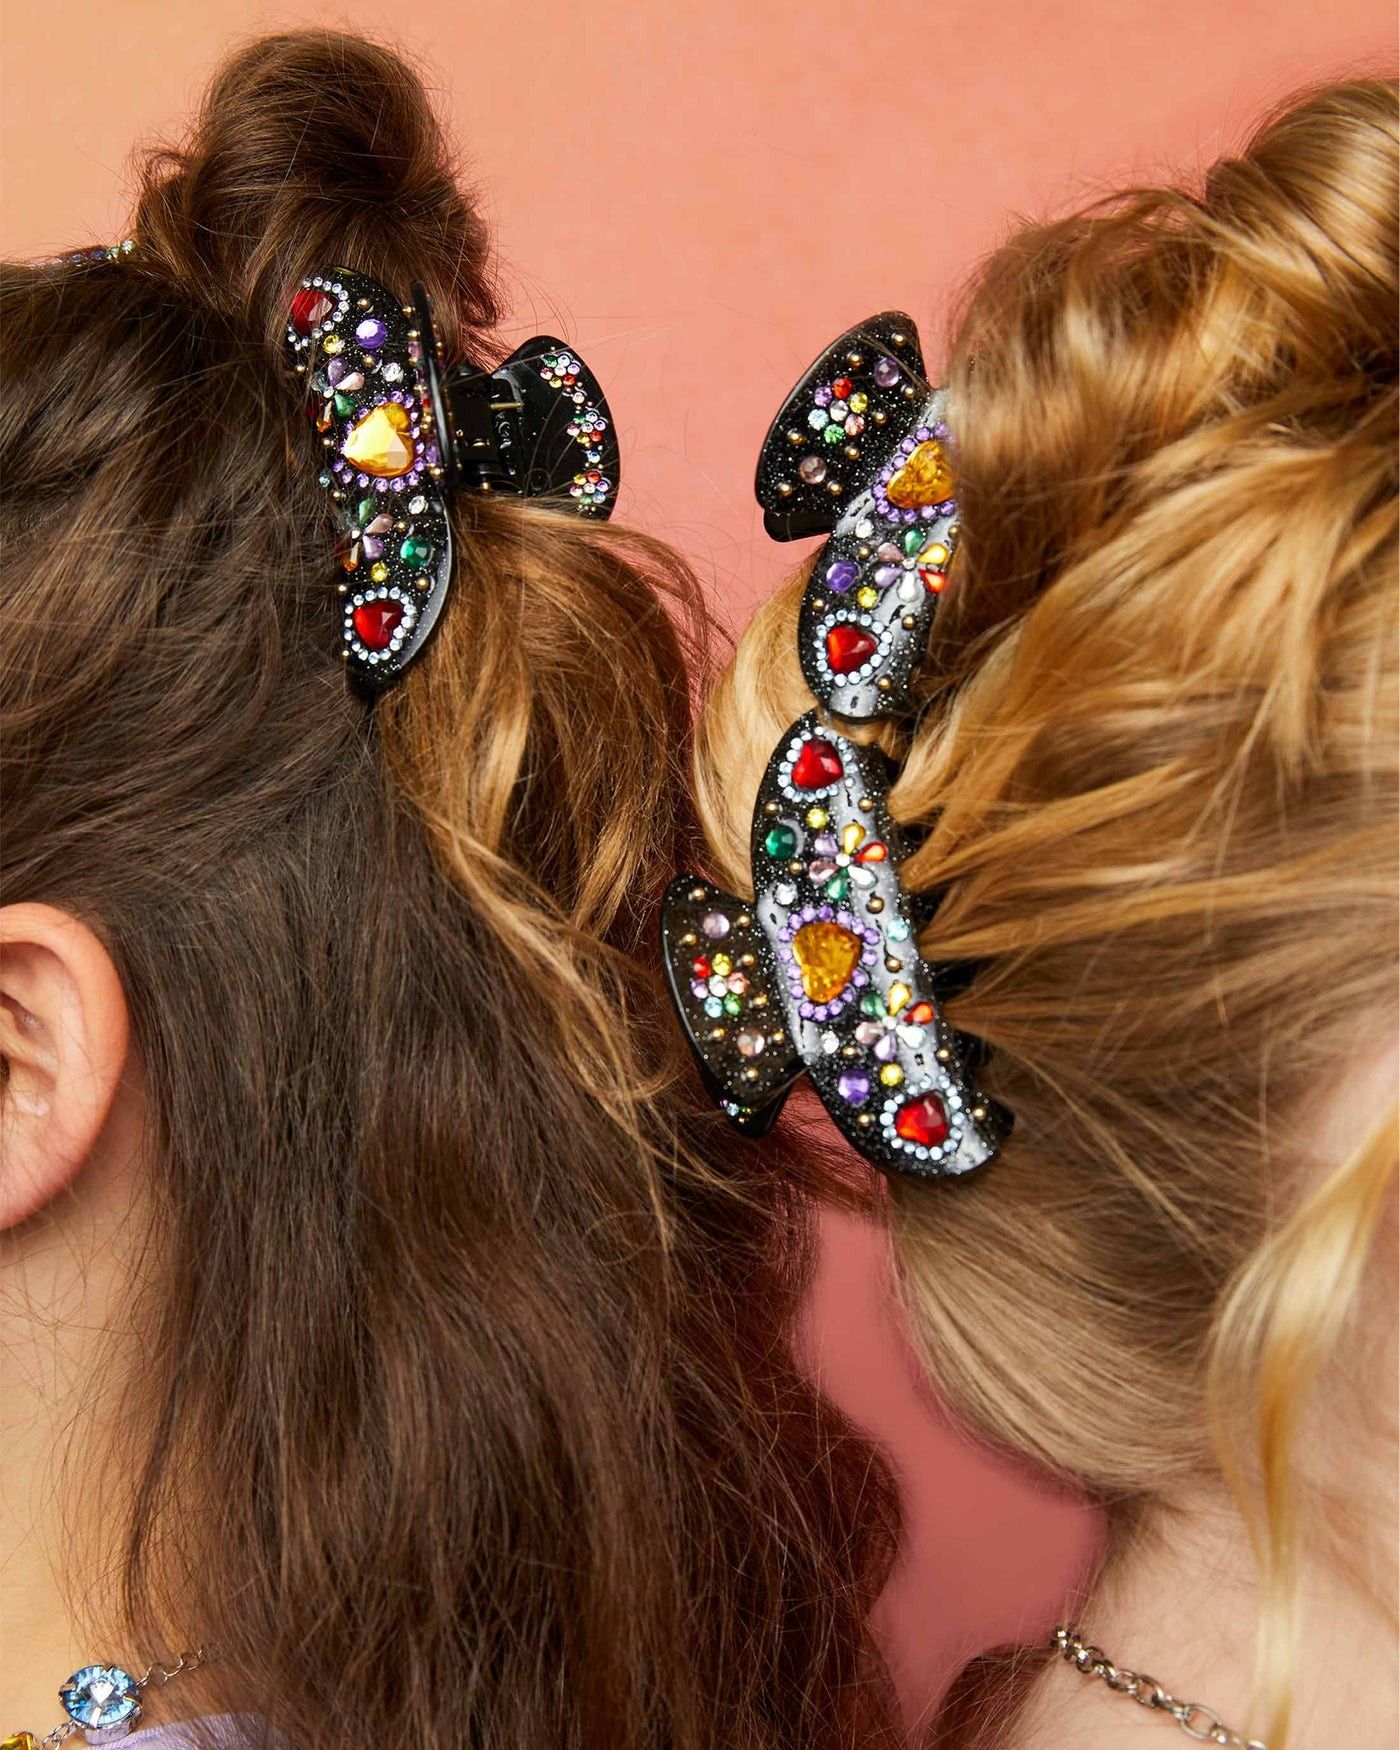 Hair clips: How to wear hair clips like a cool girl - Luxy® Hair